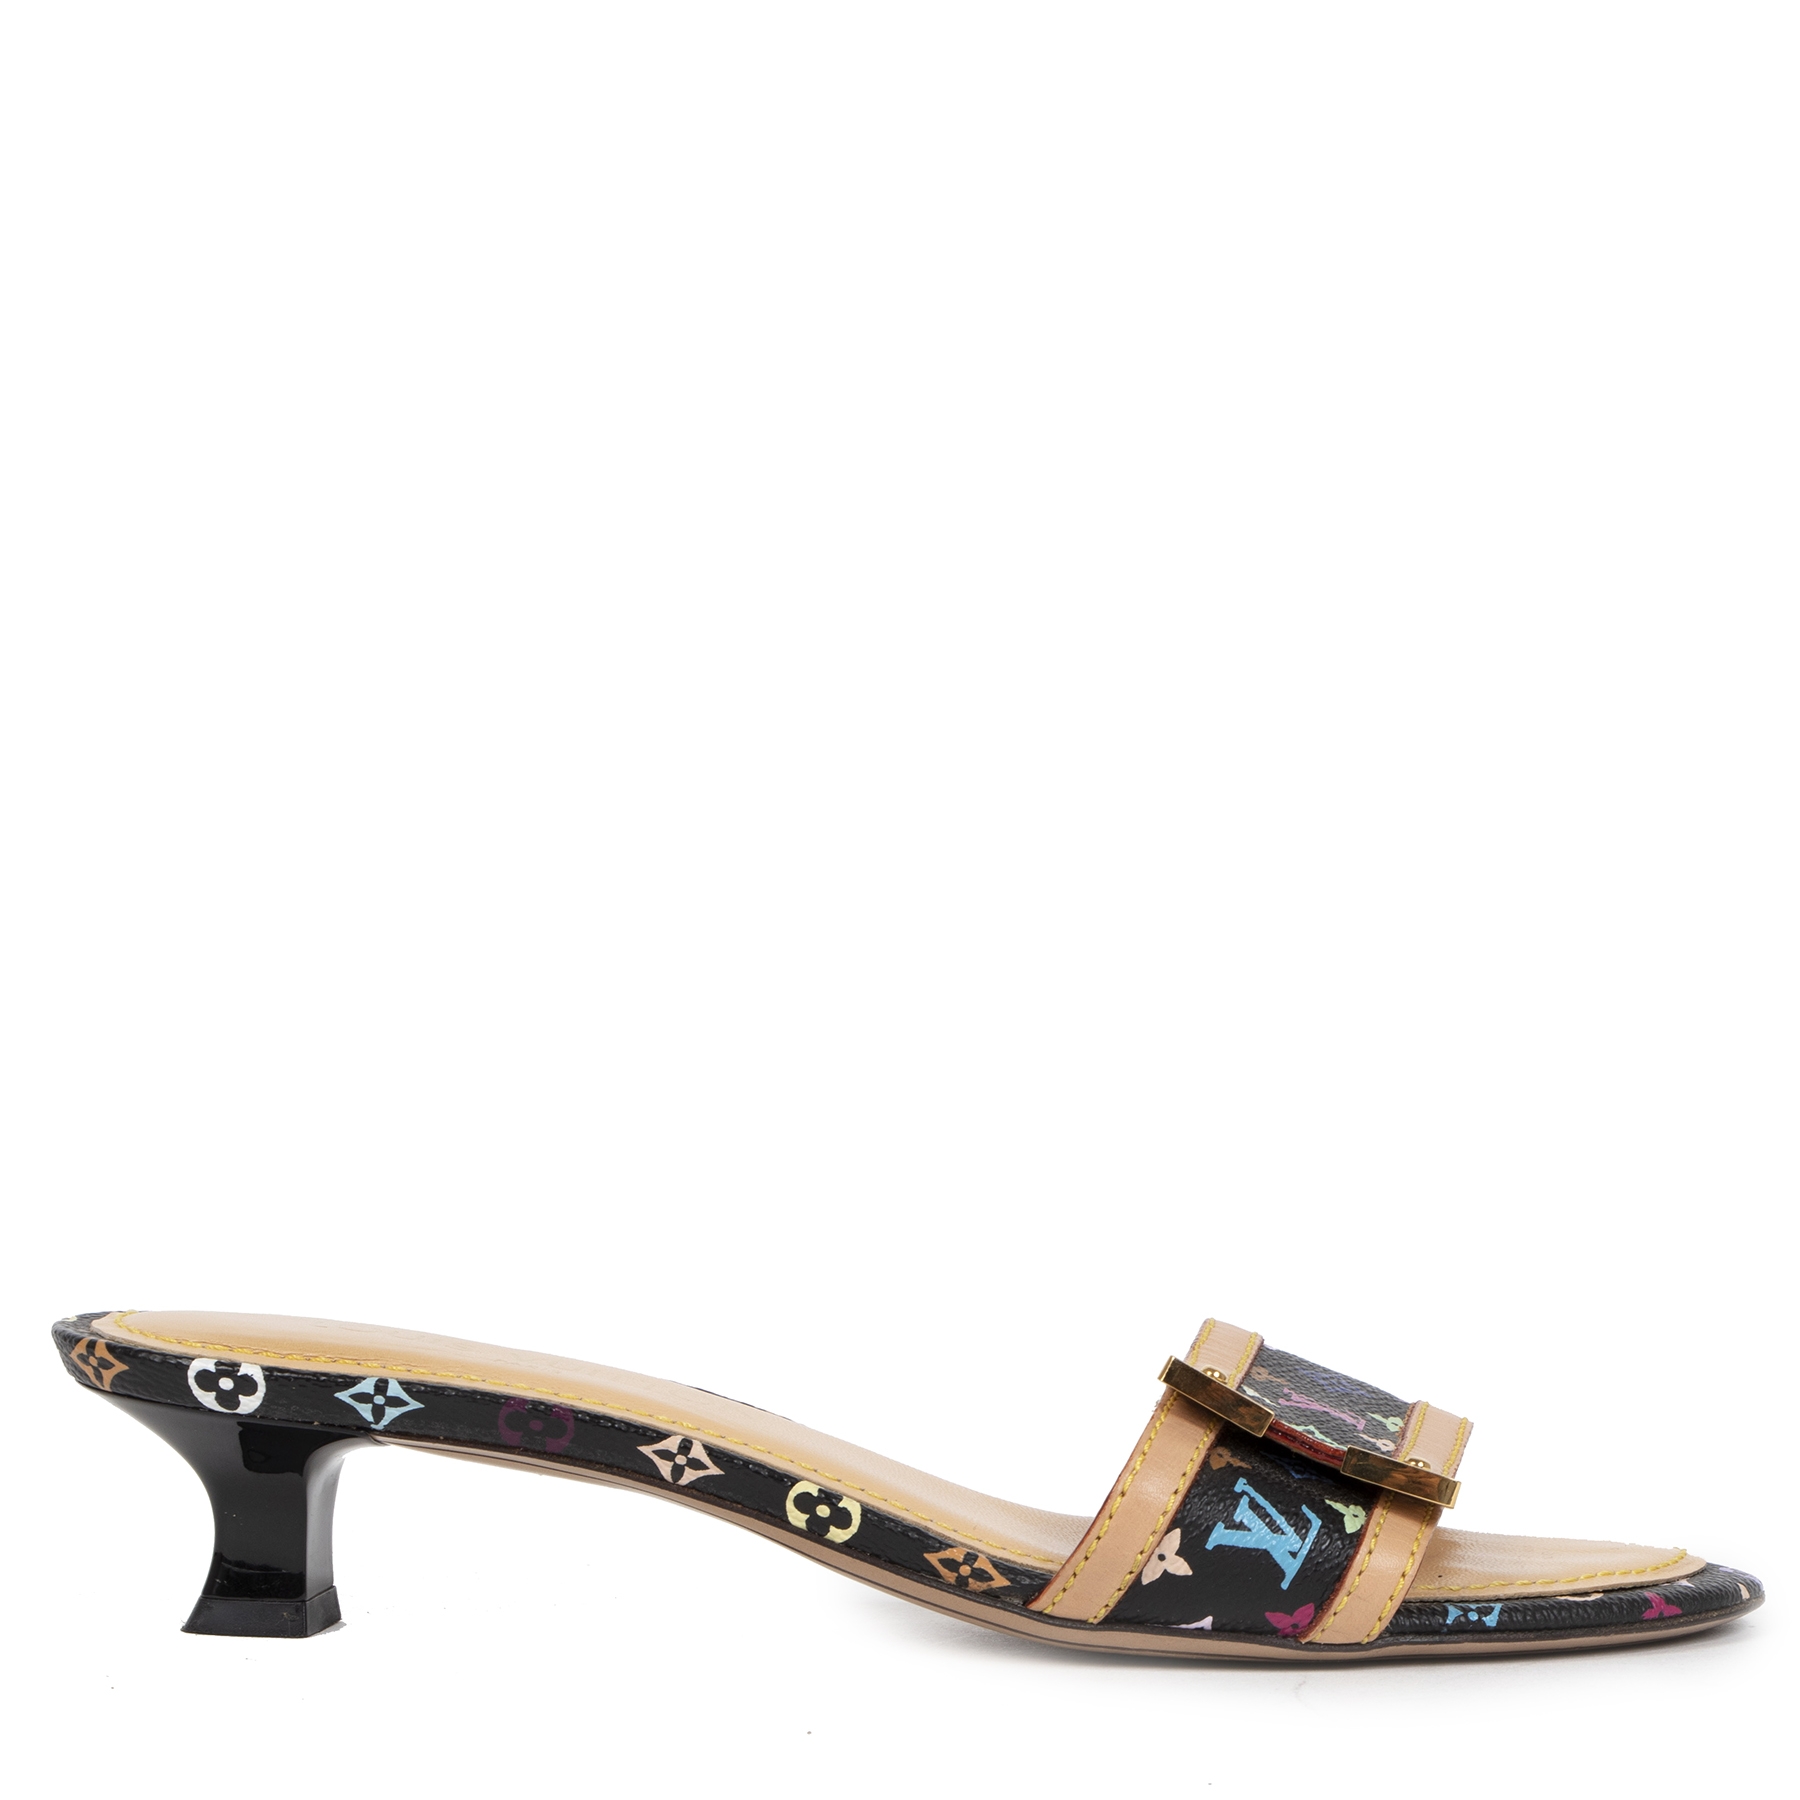 Louis Vuitton - Sandals - Size: Shoes / EU 44, UK 9,5 - Catawiki